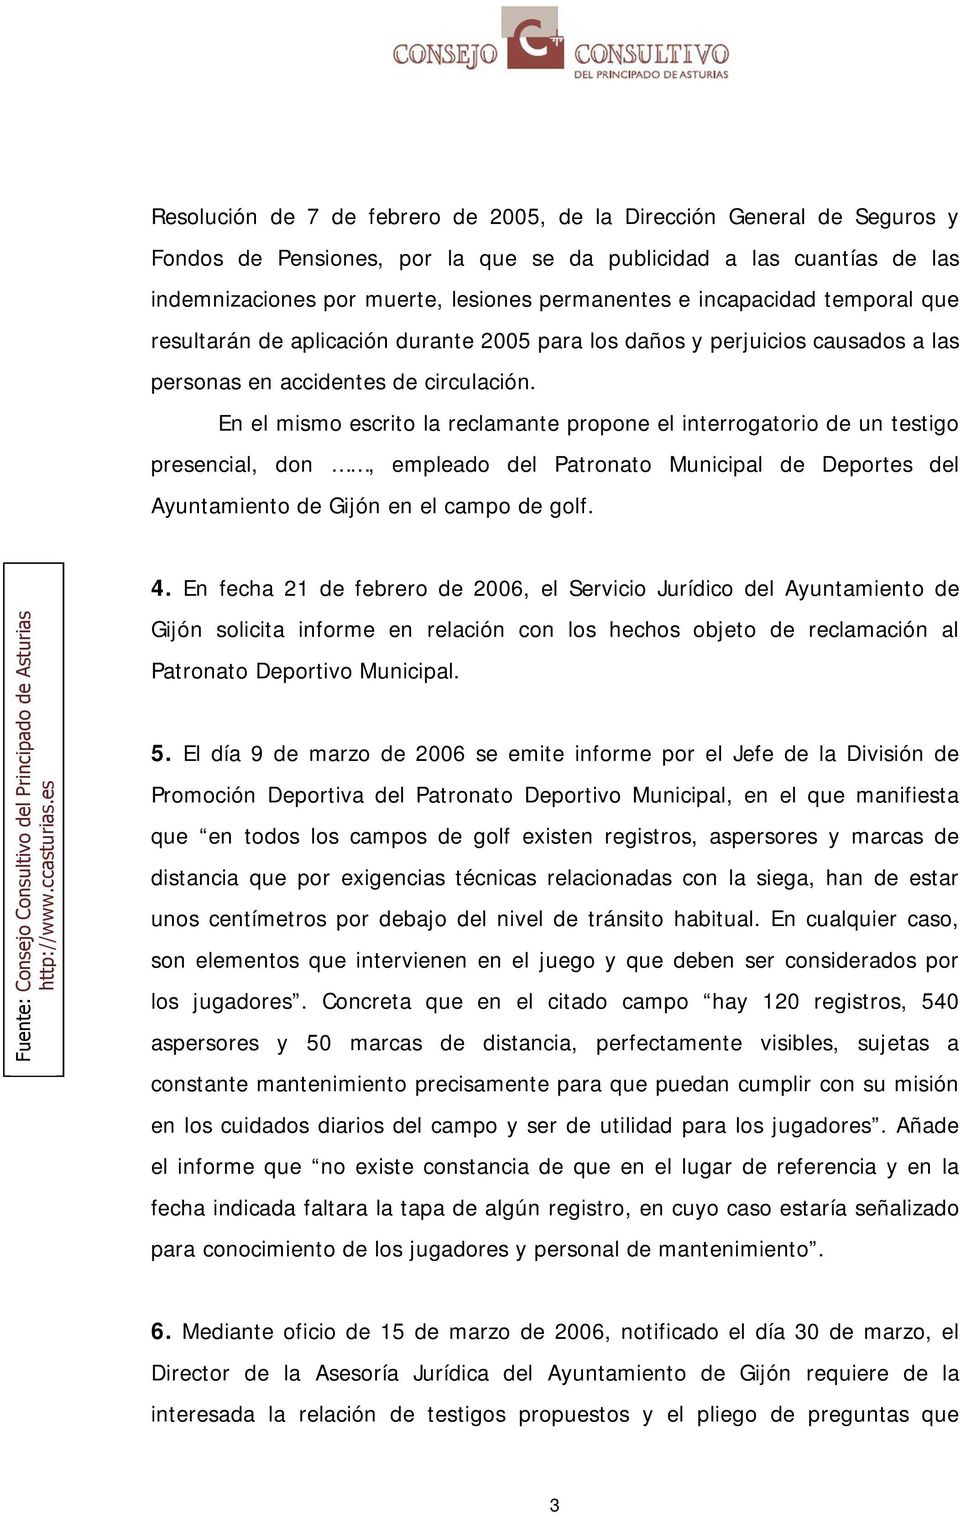 En el mismo escrito la reclamante propone el interrogatorio de un testigo presencial, don, empleado del Patronato Municipal de Deportes del Ayuntamiento de Gijón en el campo de golf. 4.